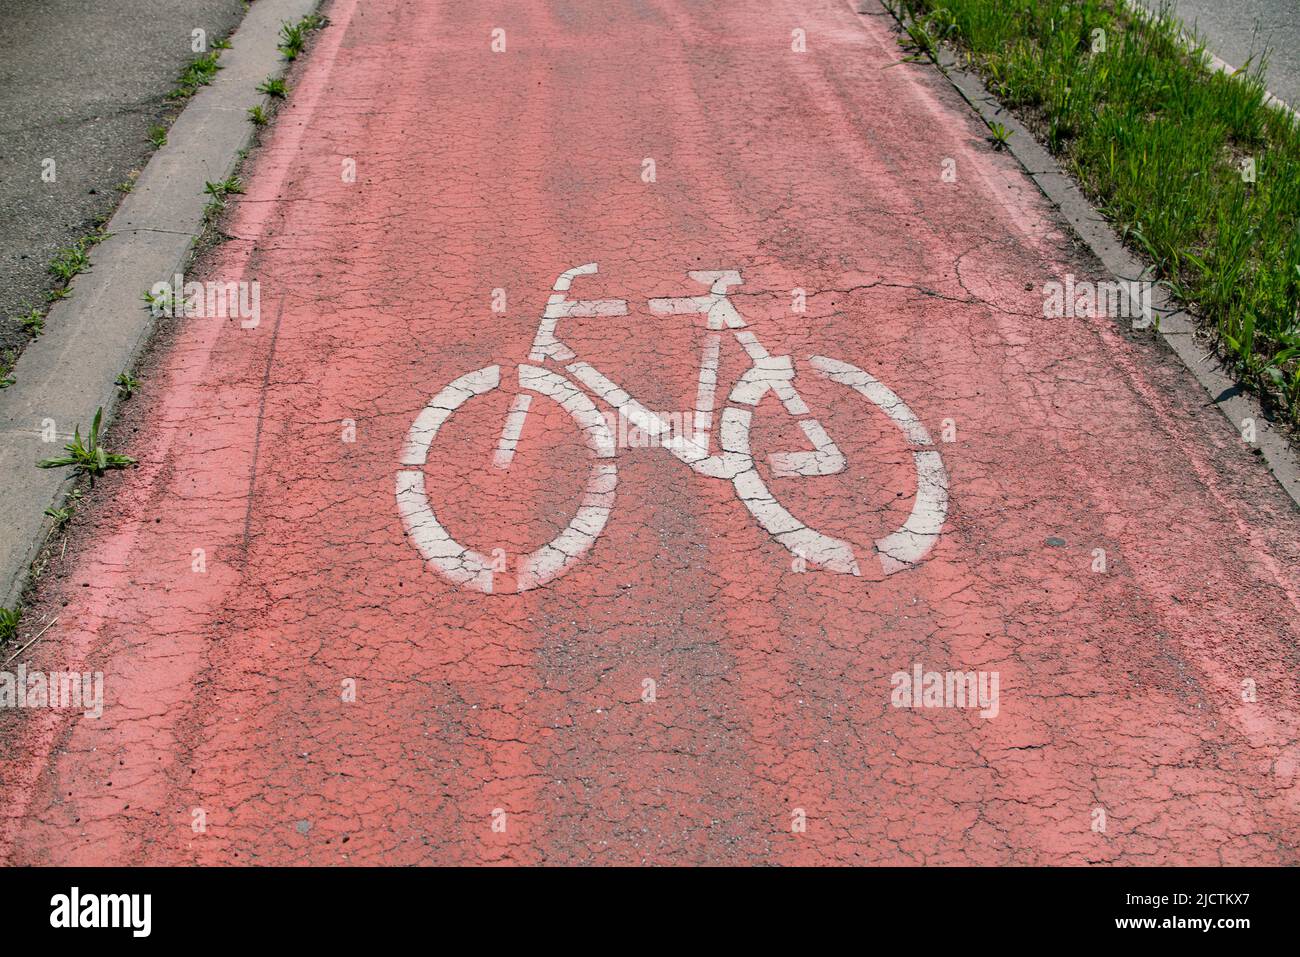 percorso ciclabile, strada simbolo della bicicletta, con asfalto rosso per evidenziare il passaggio dedicato alle biciclette. Foto Stock